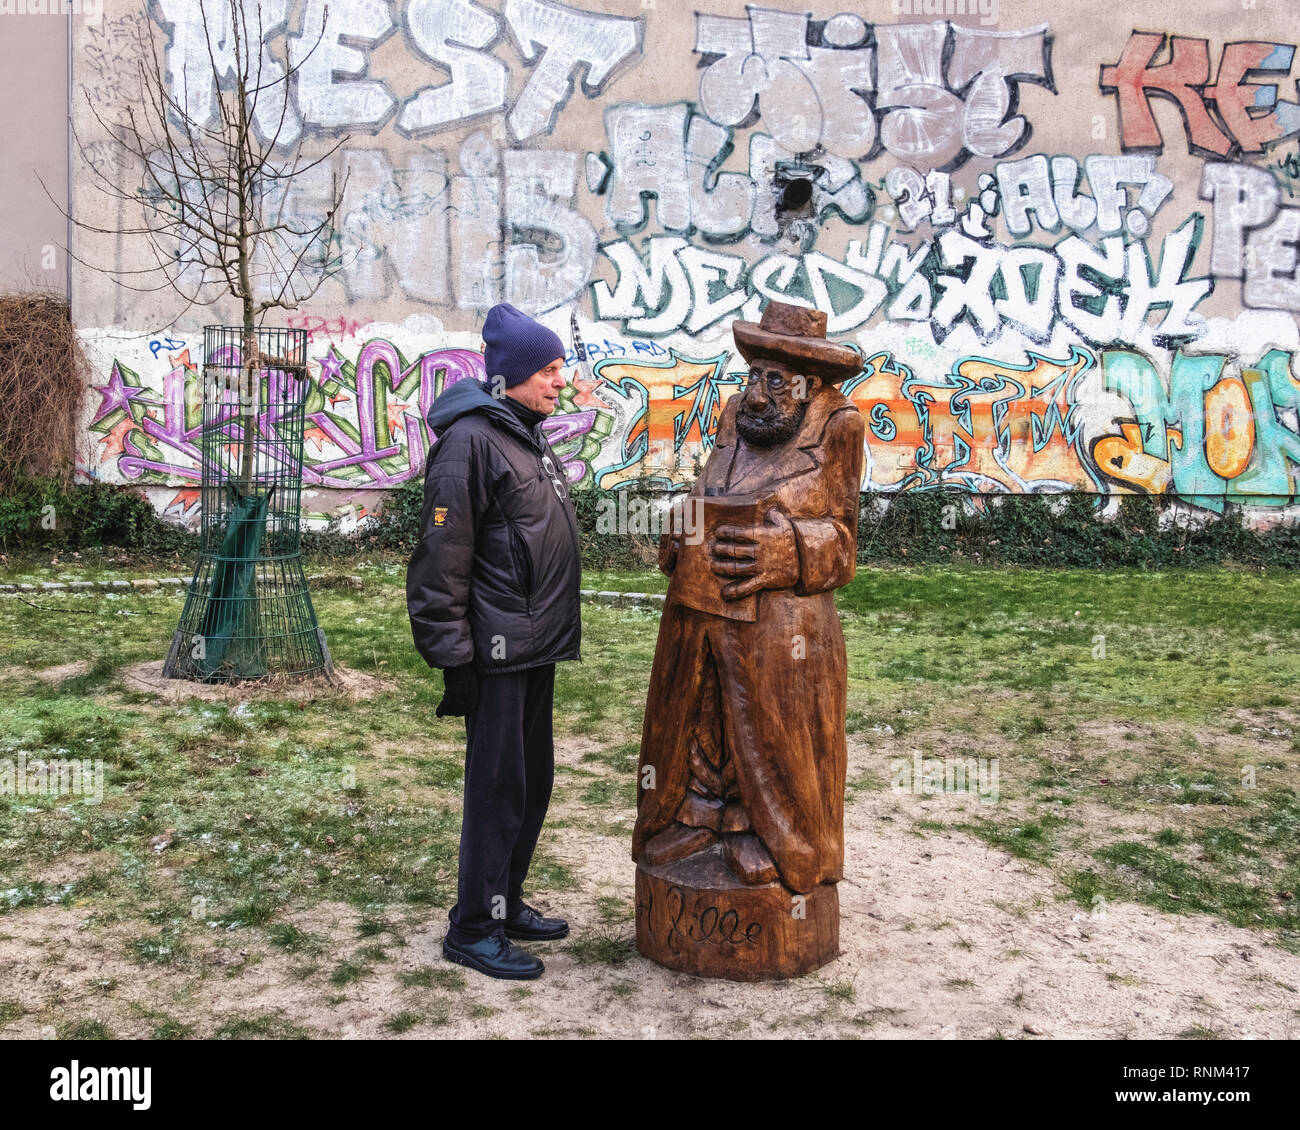 Berlin Mitte, Heinrich-Zille-Park, Elderly man and wooden sculpture of man with book in Children’s adventure playground in Bergstraße, Stock Photo